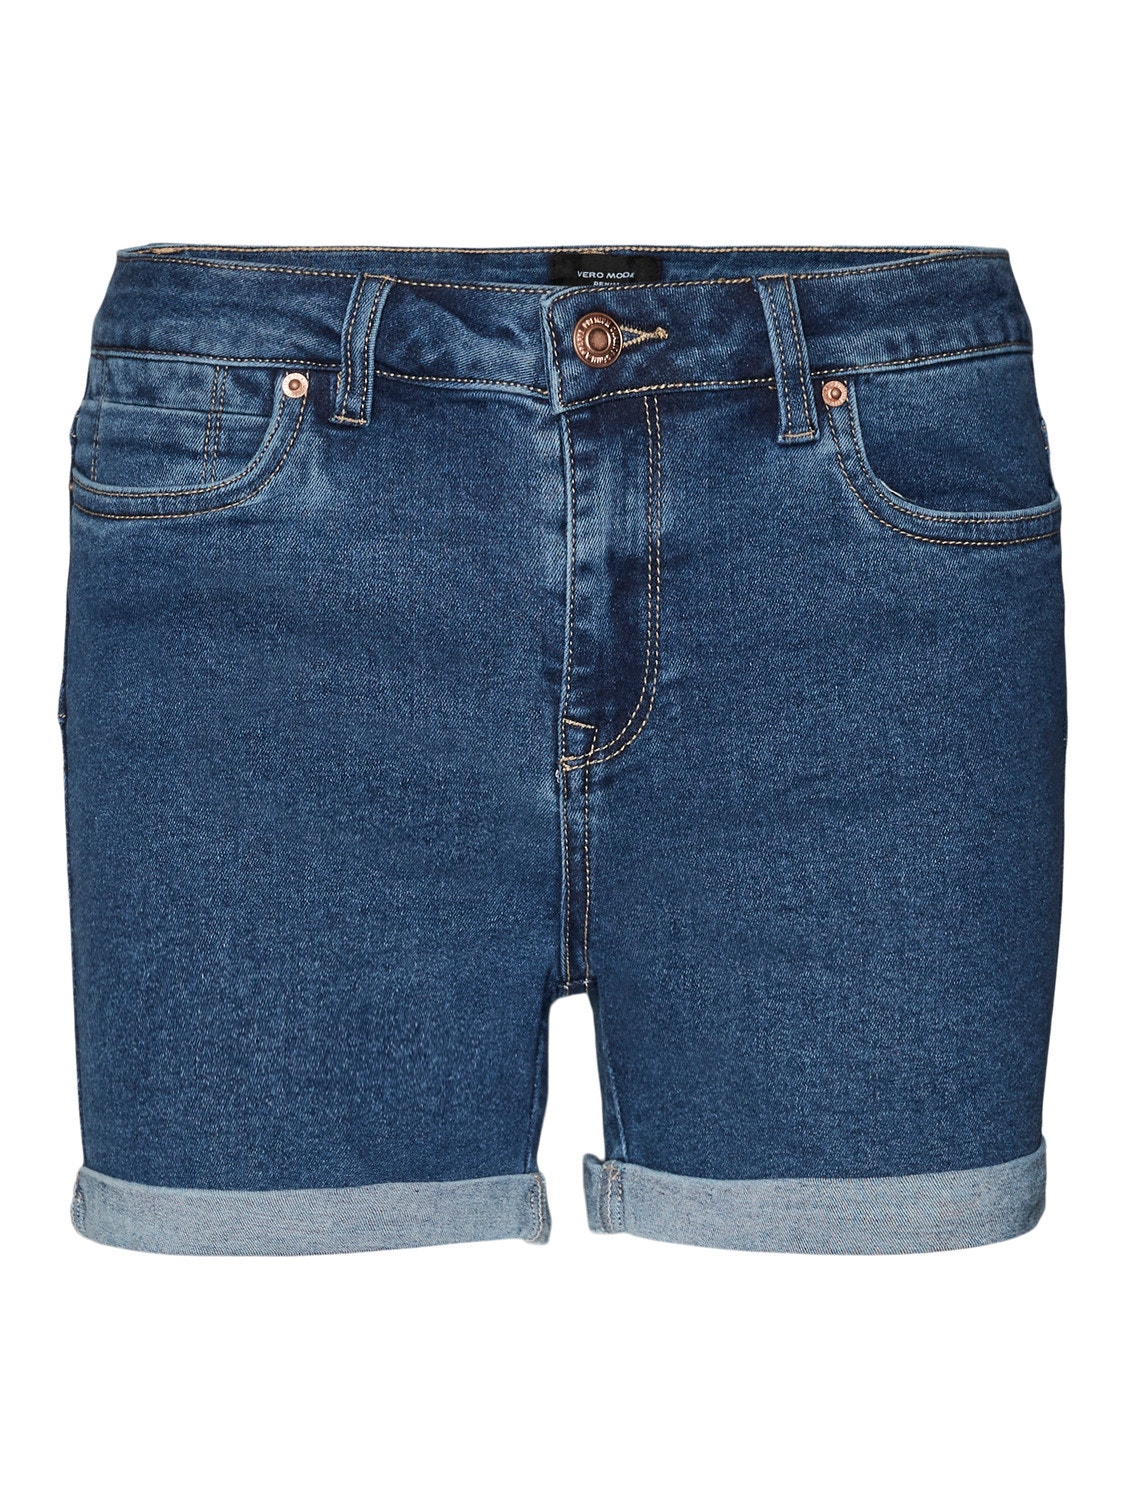 Vero Moda VMLUNA Shorts -Medium Blue Denim - 10279489